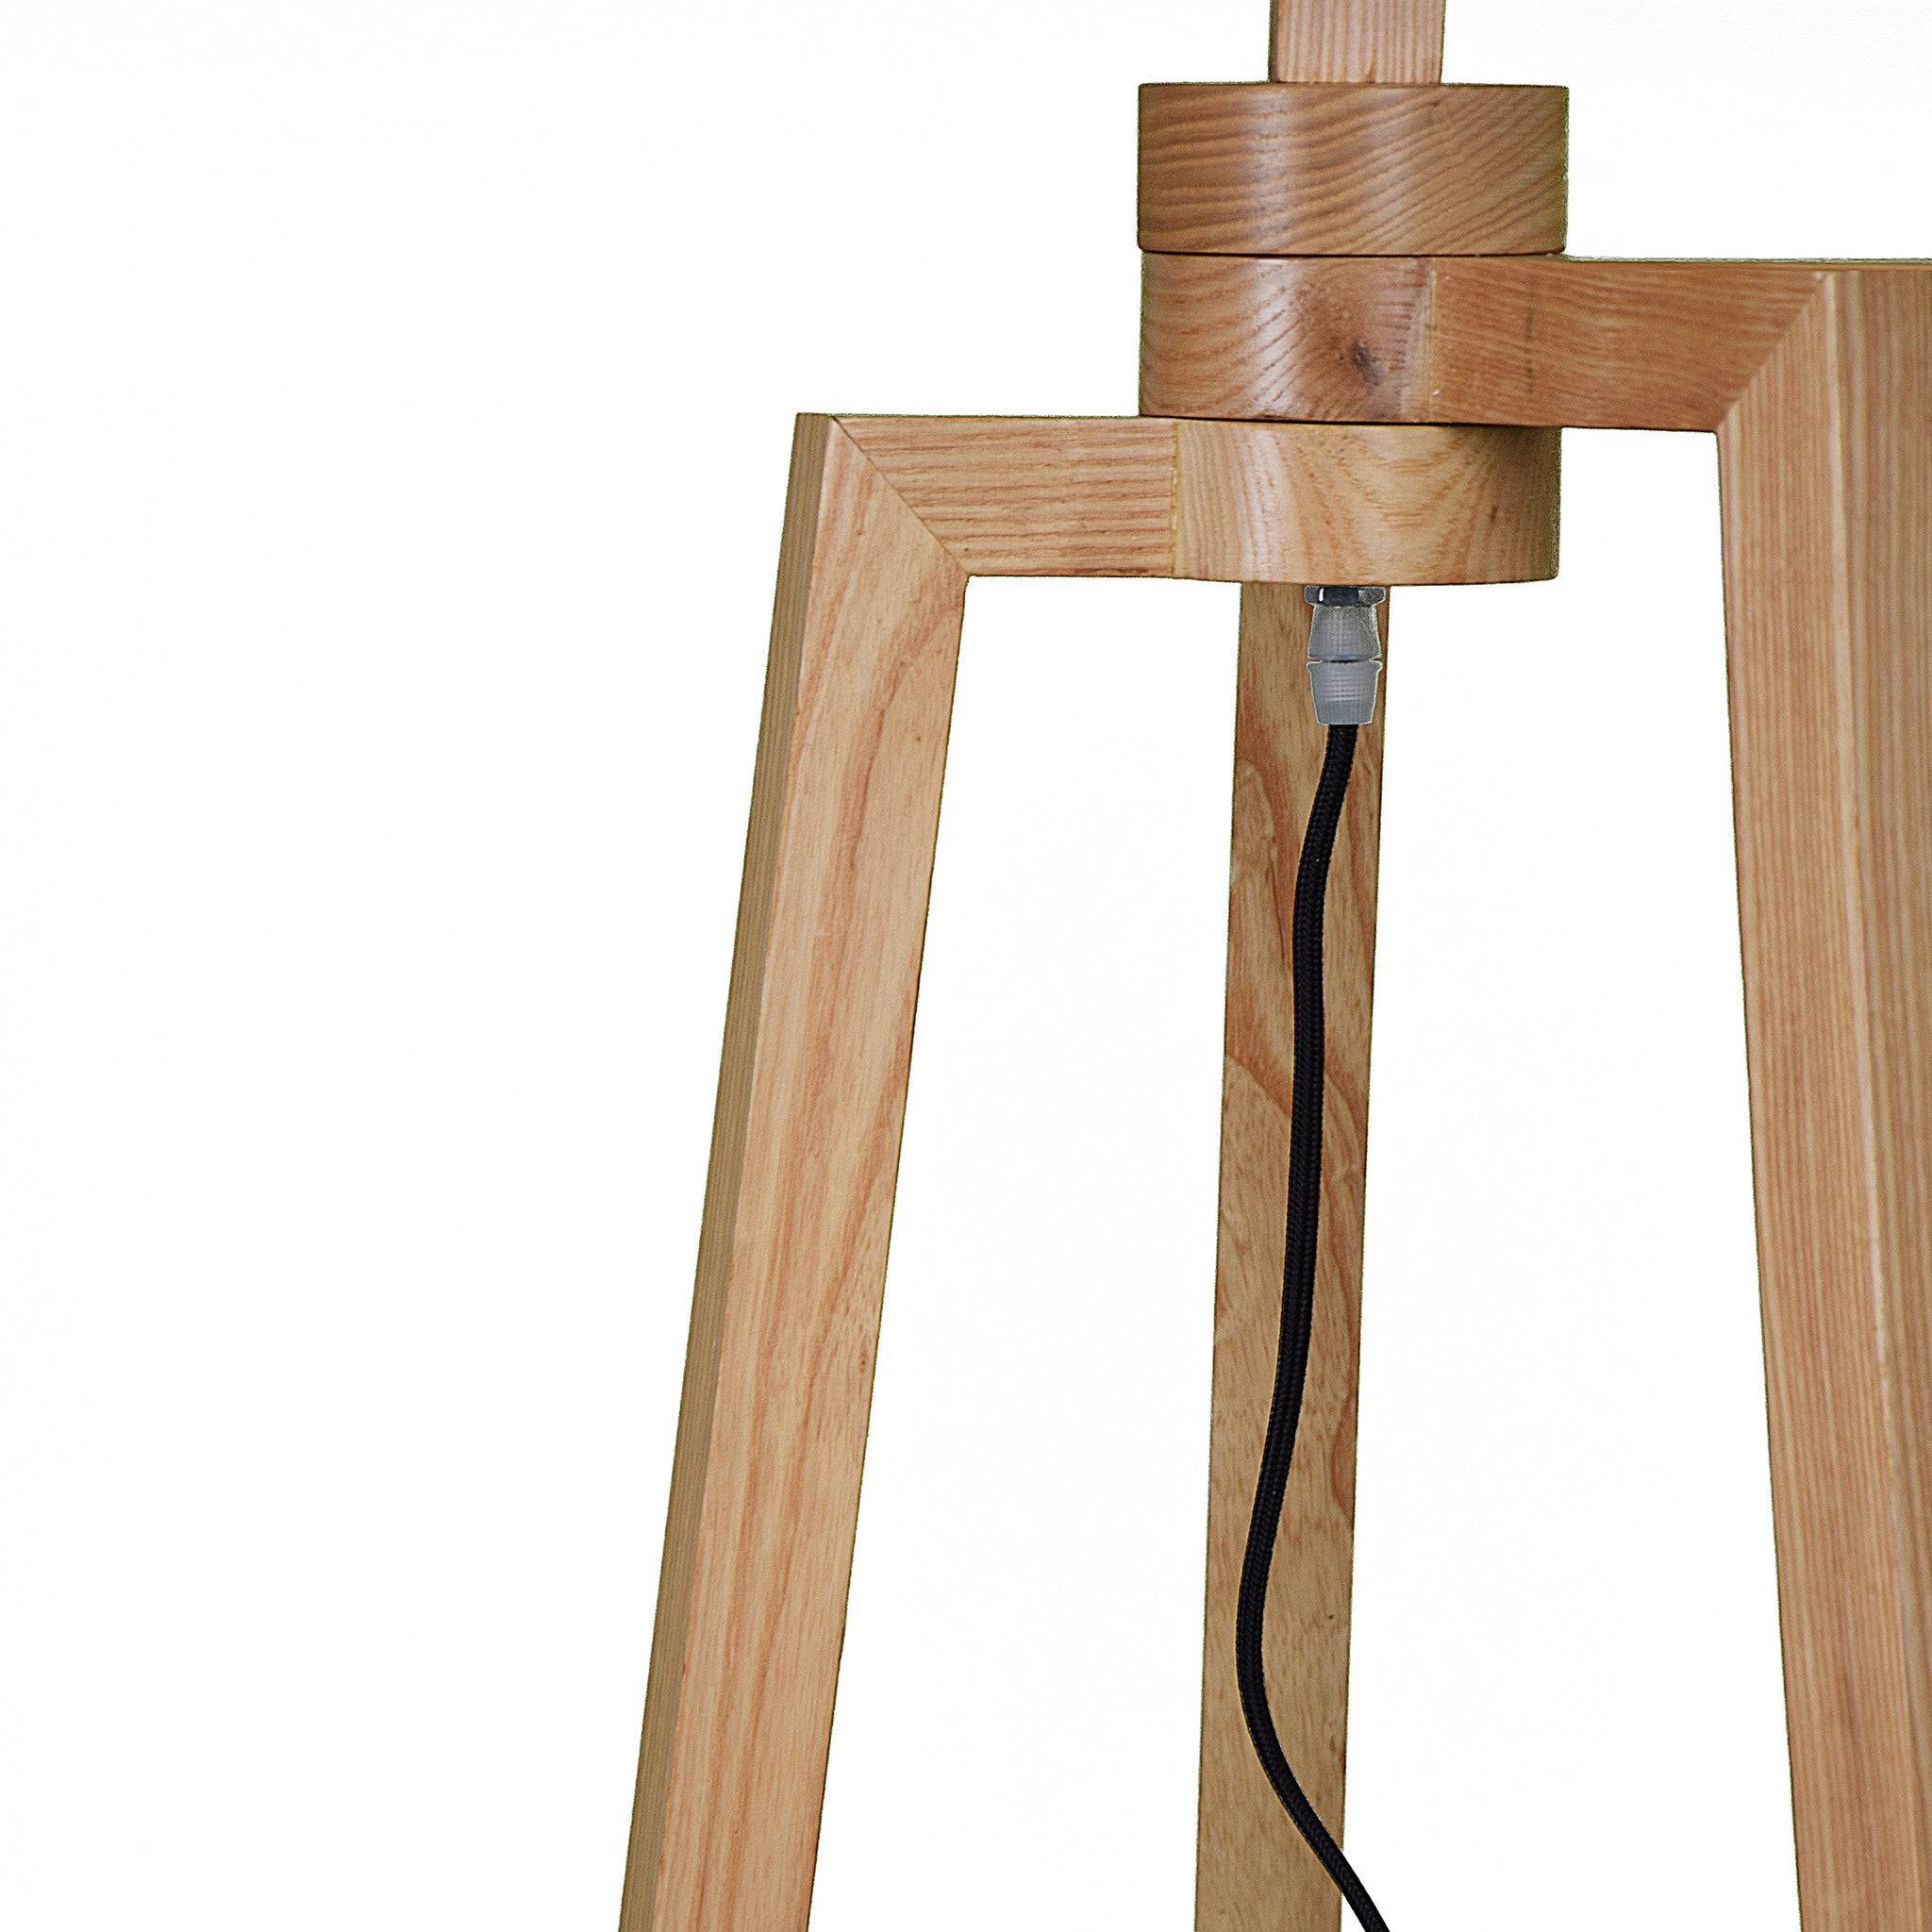 Spider Solid Wood Floor Lamp Bpmt16-N -  Floor Lamps | مصباح أرضي من الخشب الصلب العنكبوت - ebarza Furniture UAE | Shop Modern Furniture in Abu Dhabi & Dubai - مفروشات ايبازرا في الامارات | تسوق اثاث عصري وديكورات مميزة في دبي وابوظبي